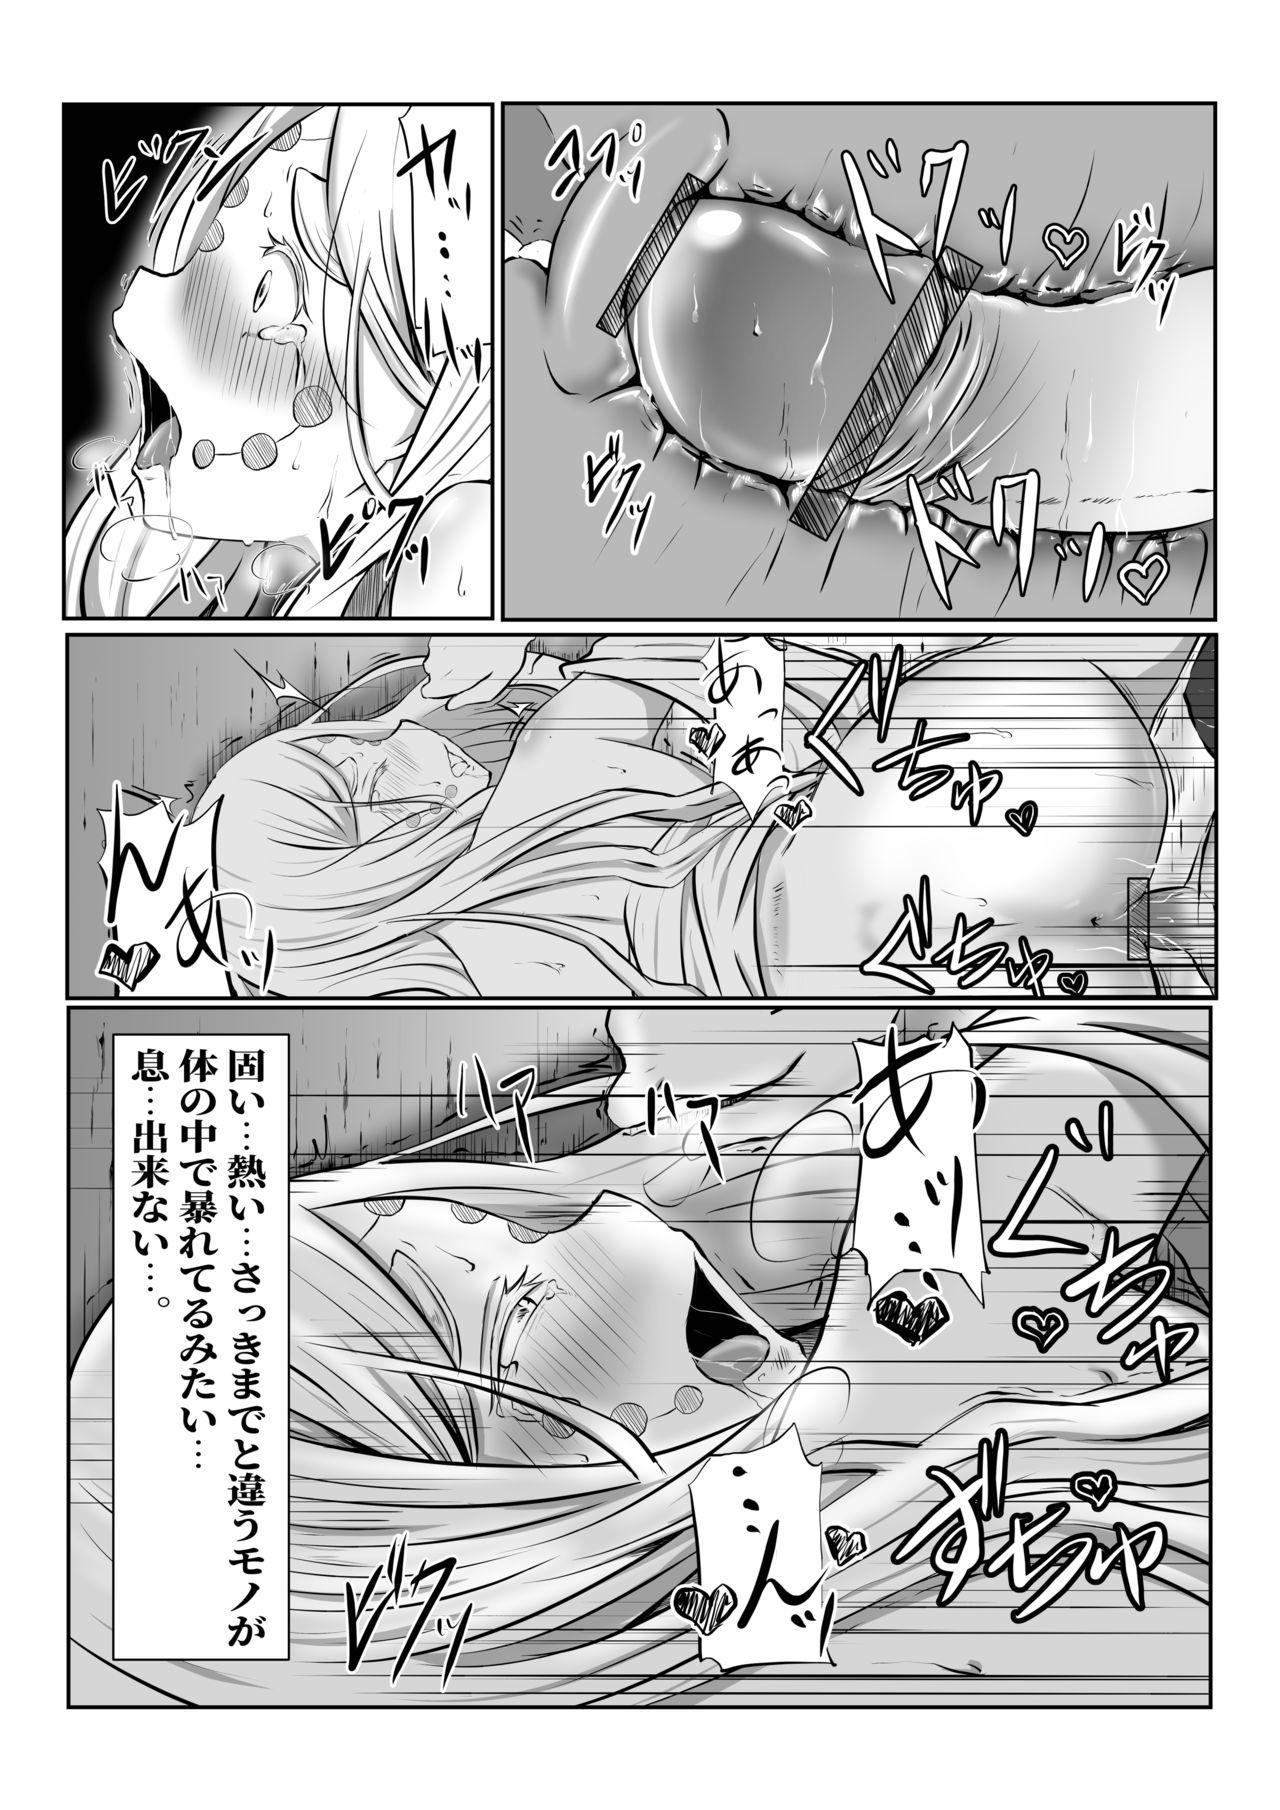 Buttplug Hinokami Sex. - Kimetsu no yaiba | demon slayer Gang - Page 26